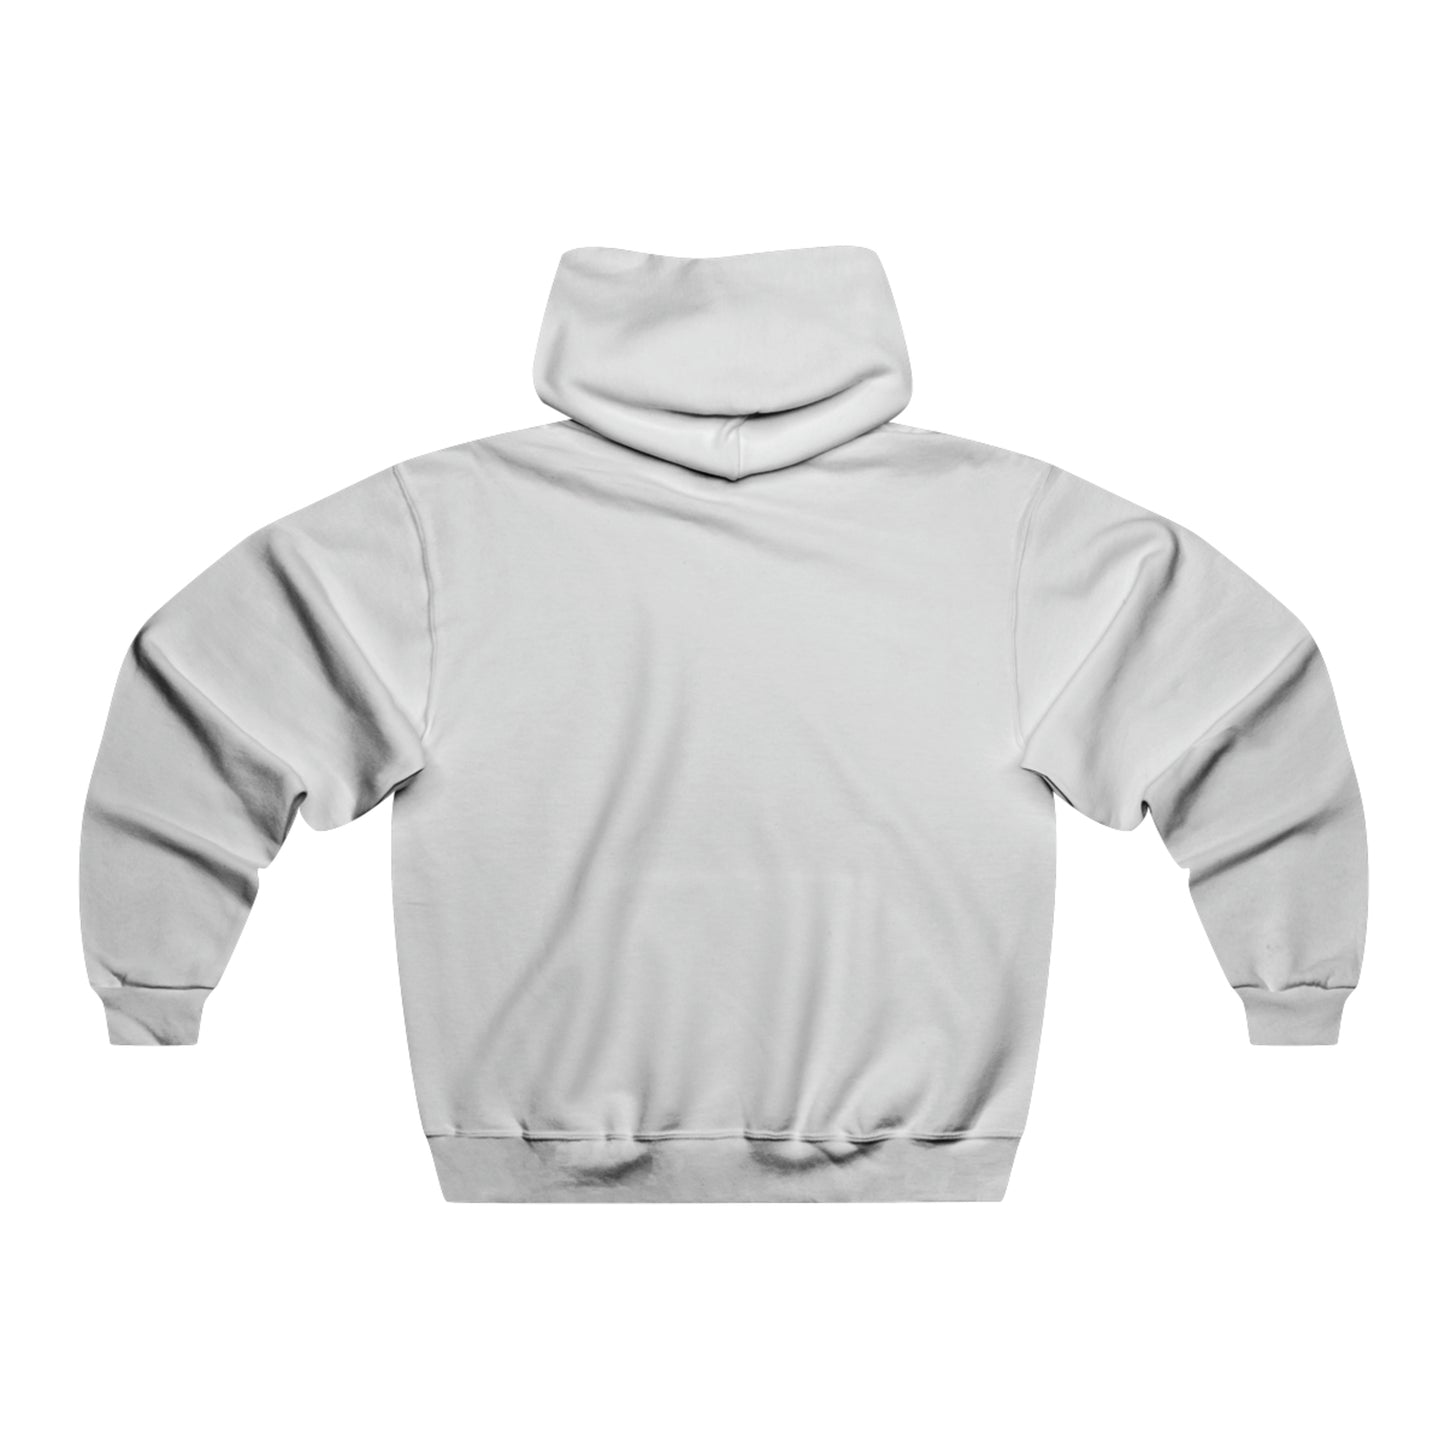 Unisex NUBLEND® Hooded Sweatshirt - Softball Mom